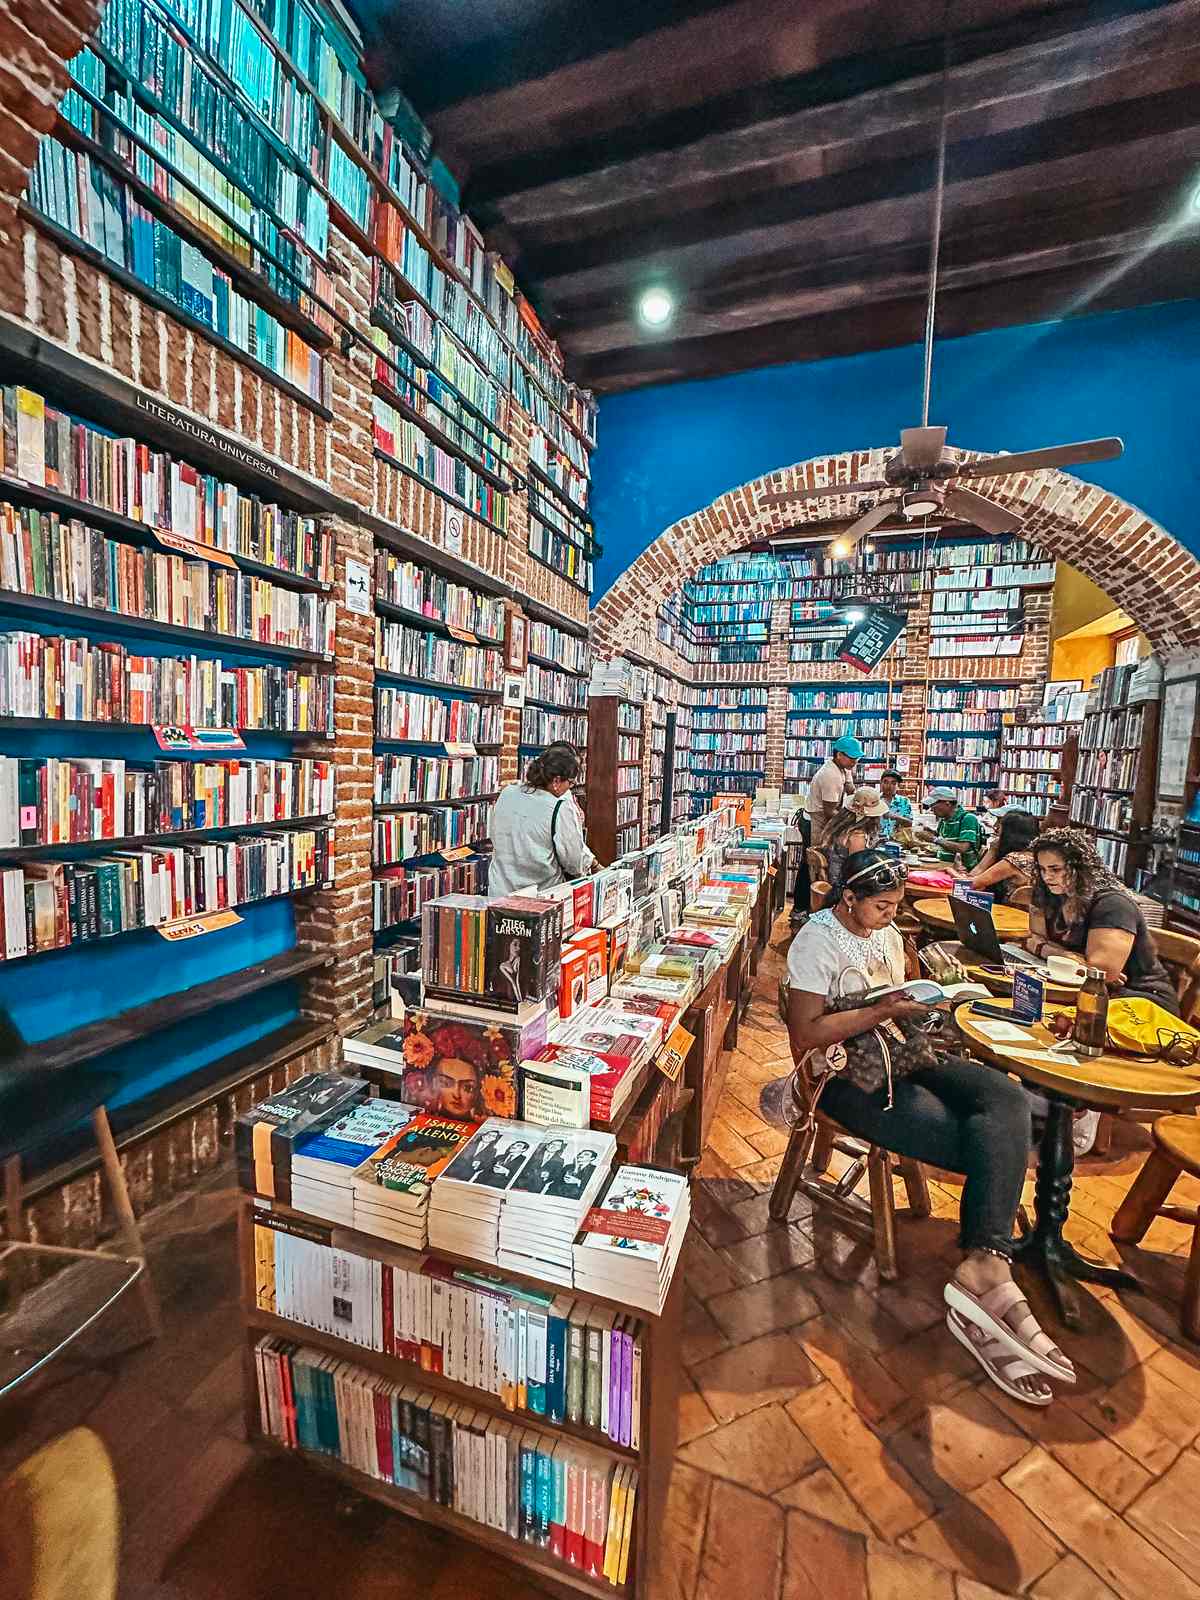 Abaco Libros y Cafe in Cartagena coffee shop